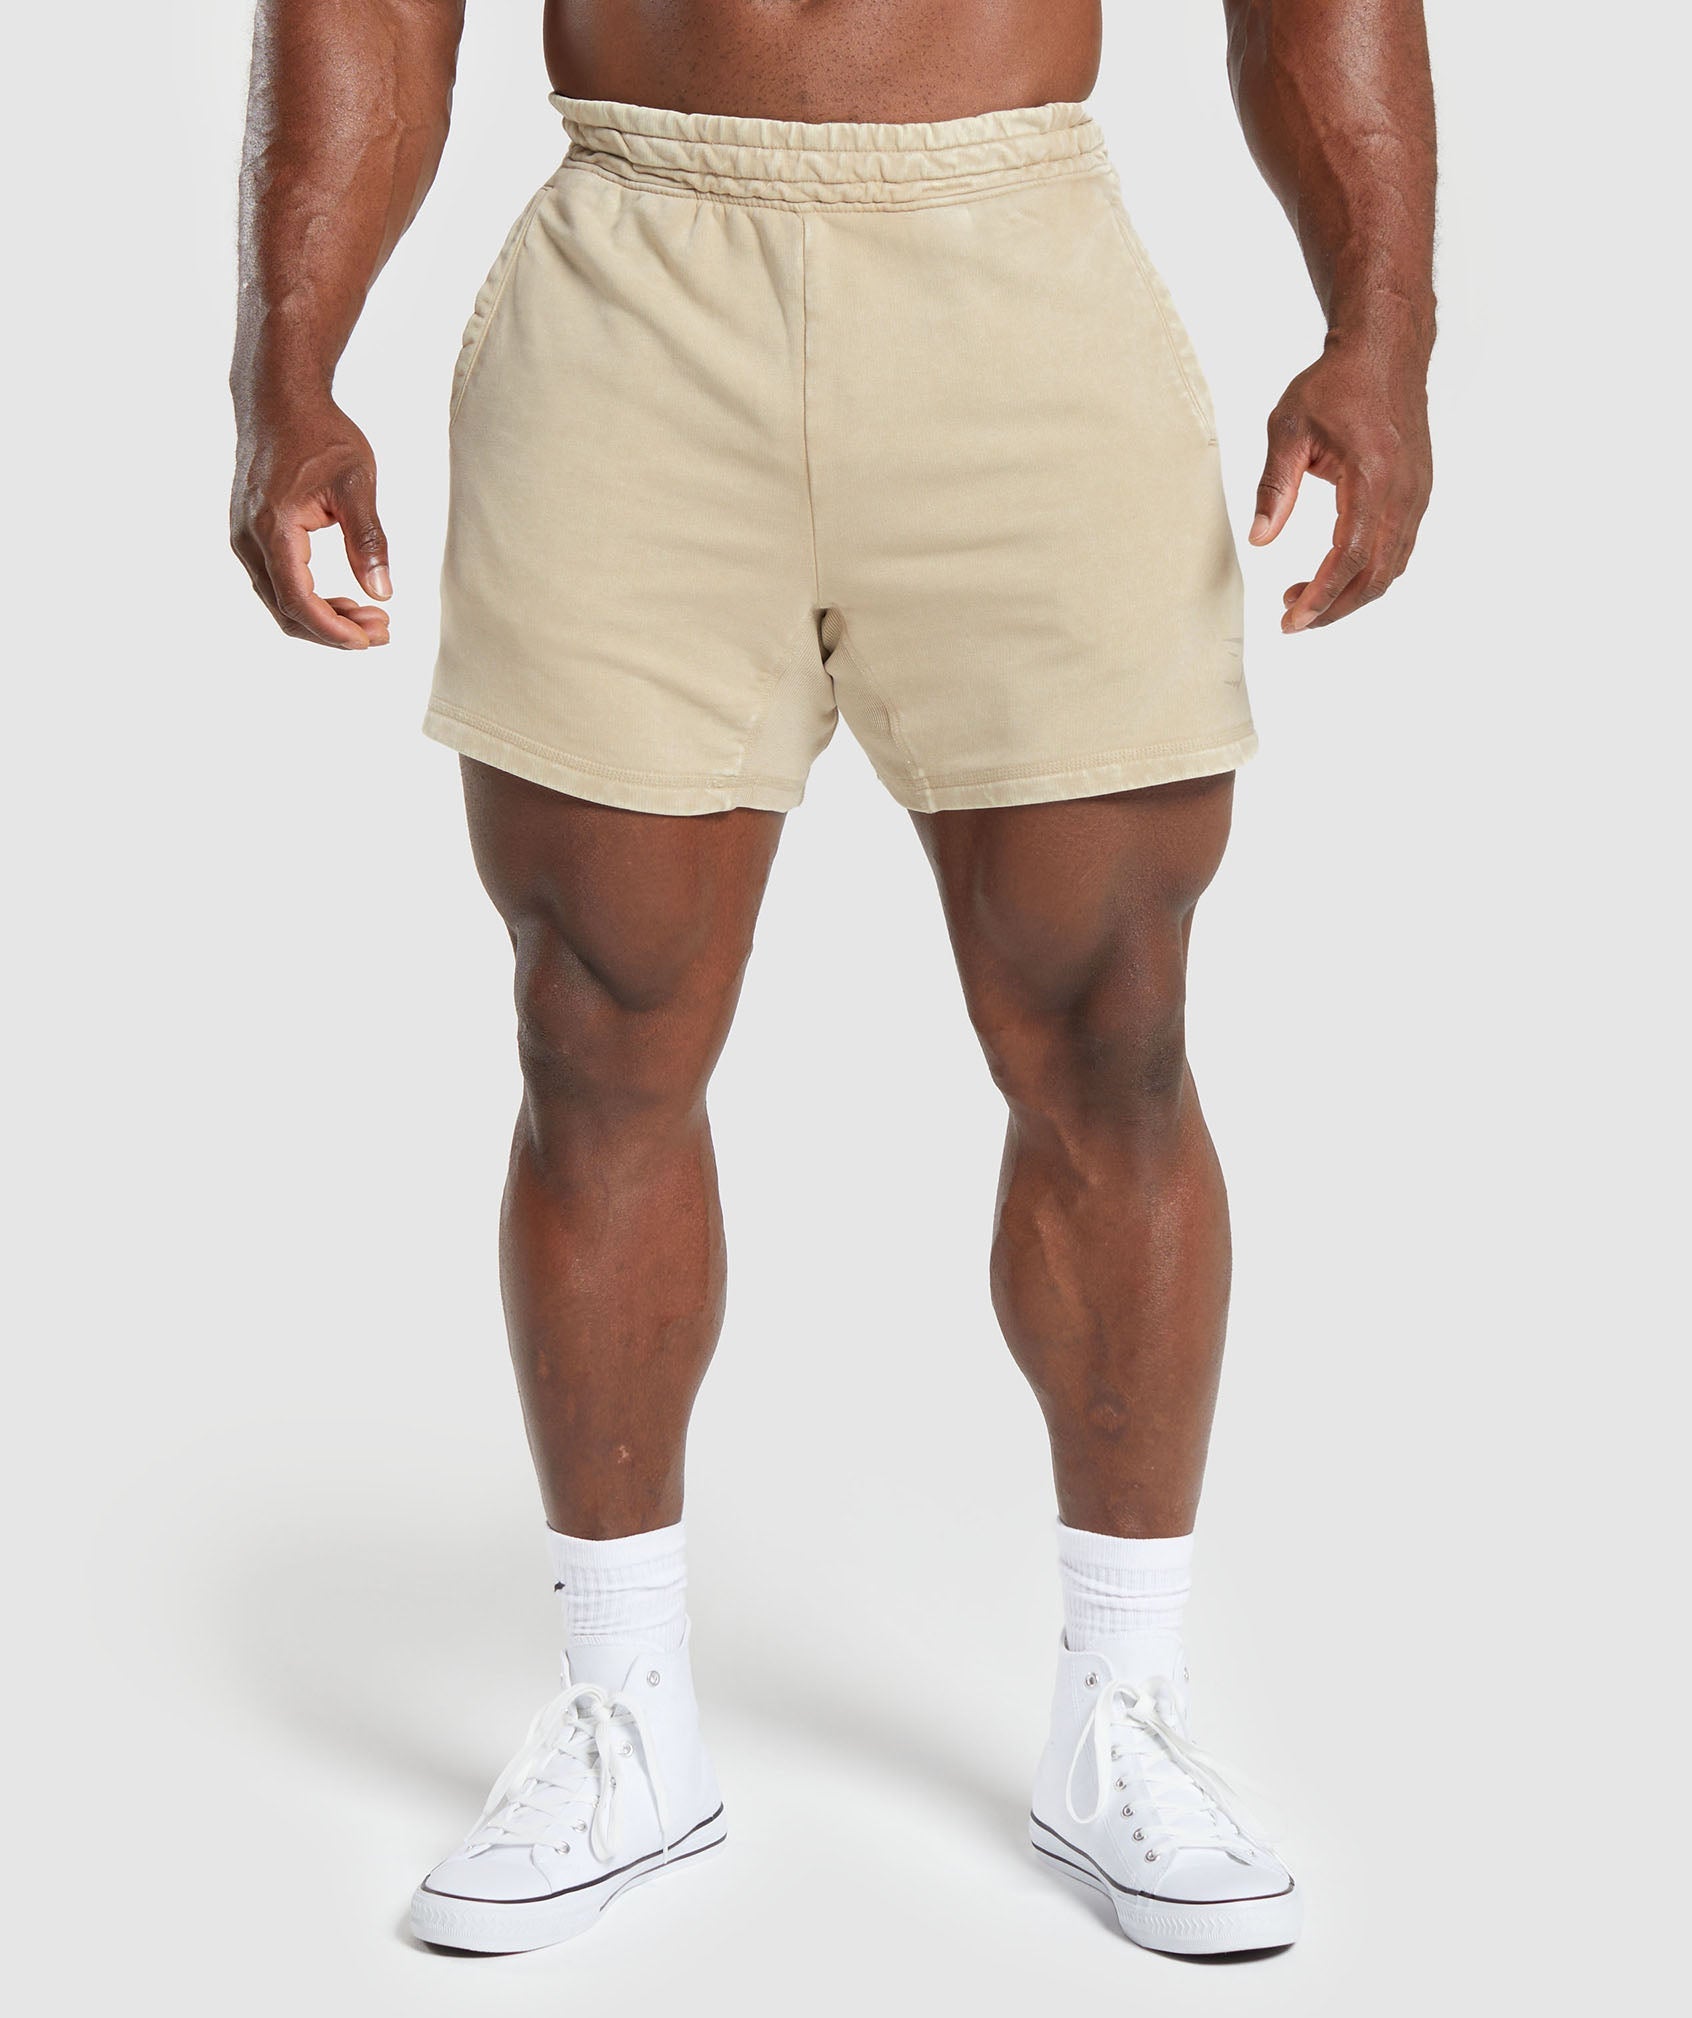 Heritage 5" Shorts